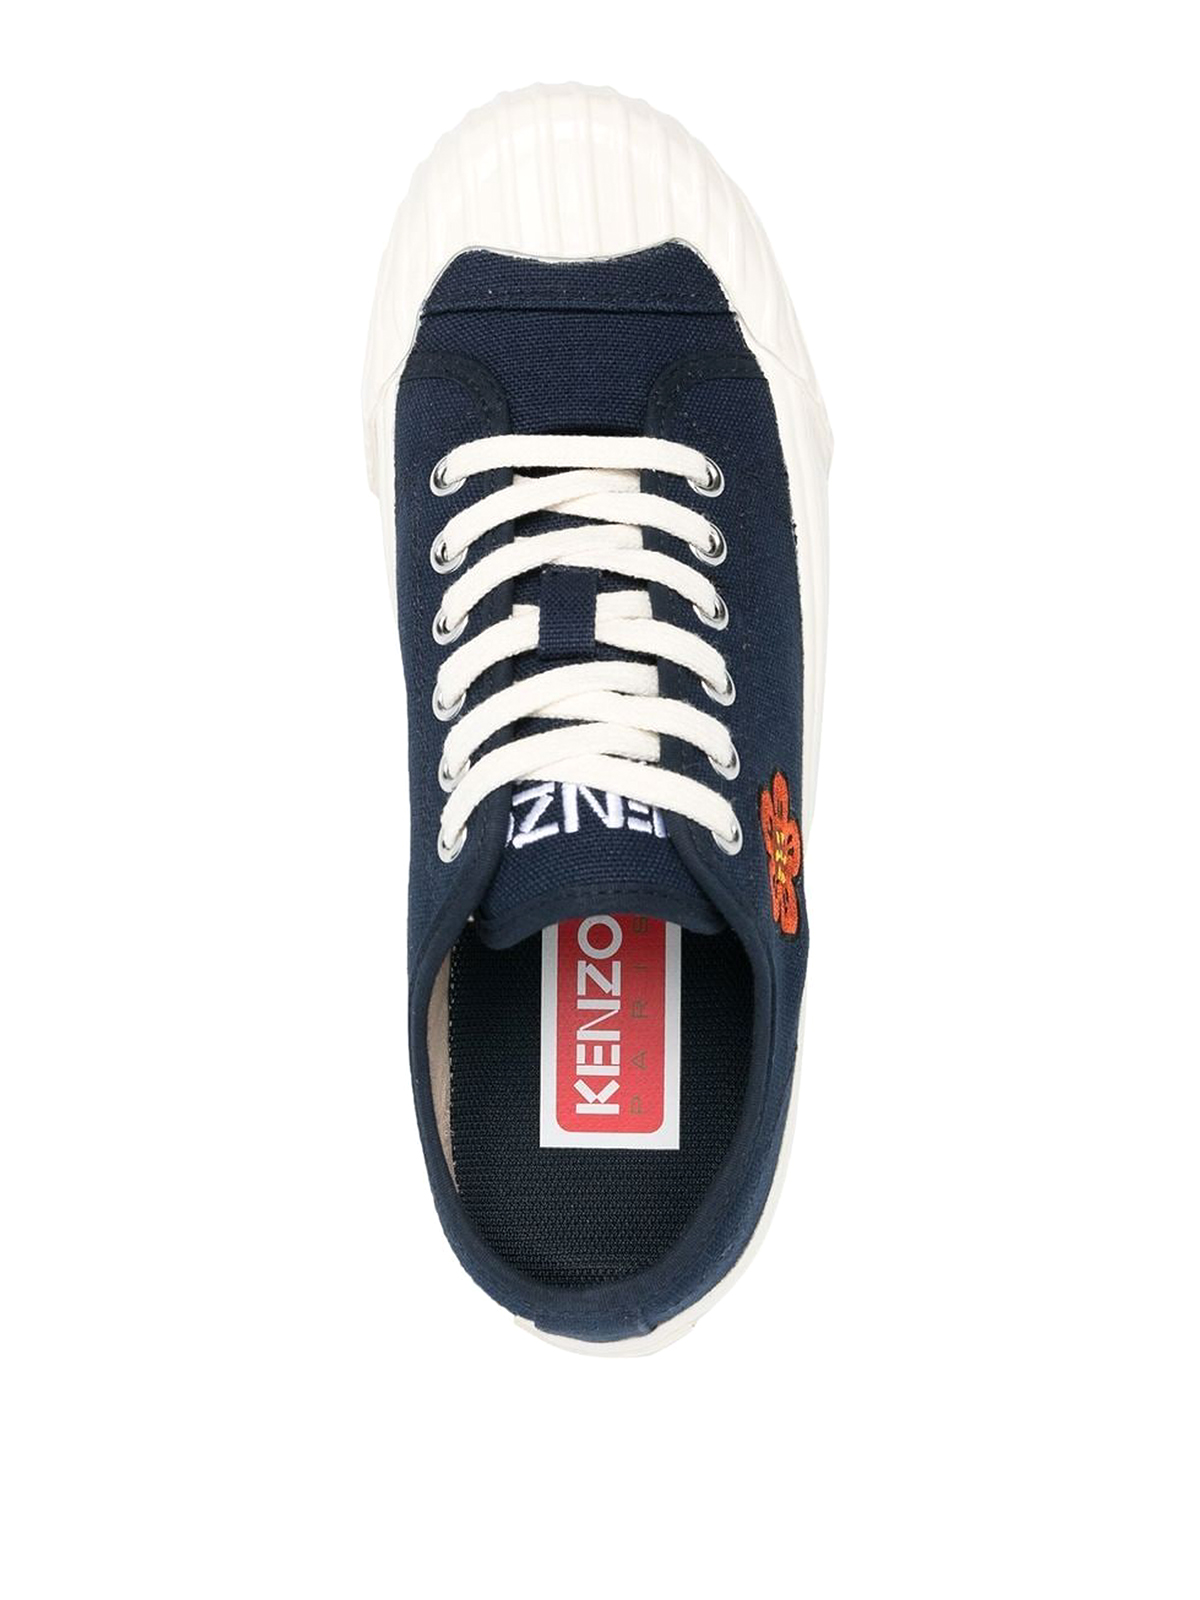 Shop Kenzo Boke Flower Cotton Sneakers In Blue